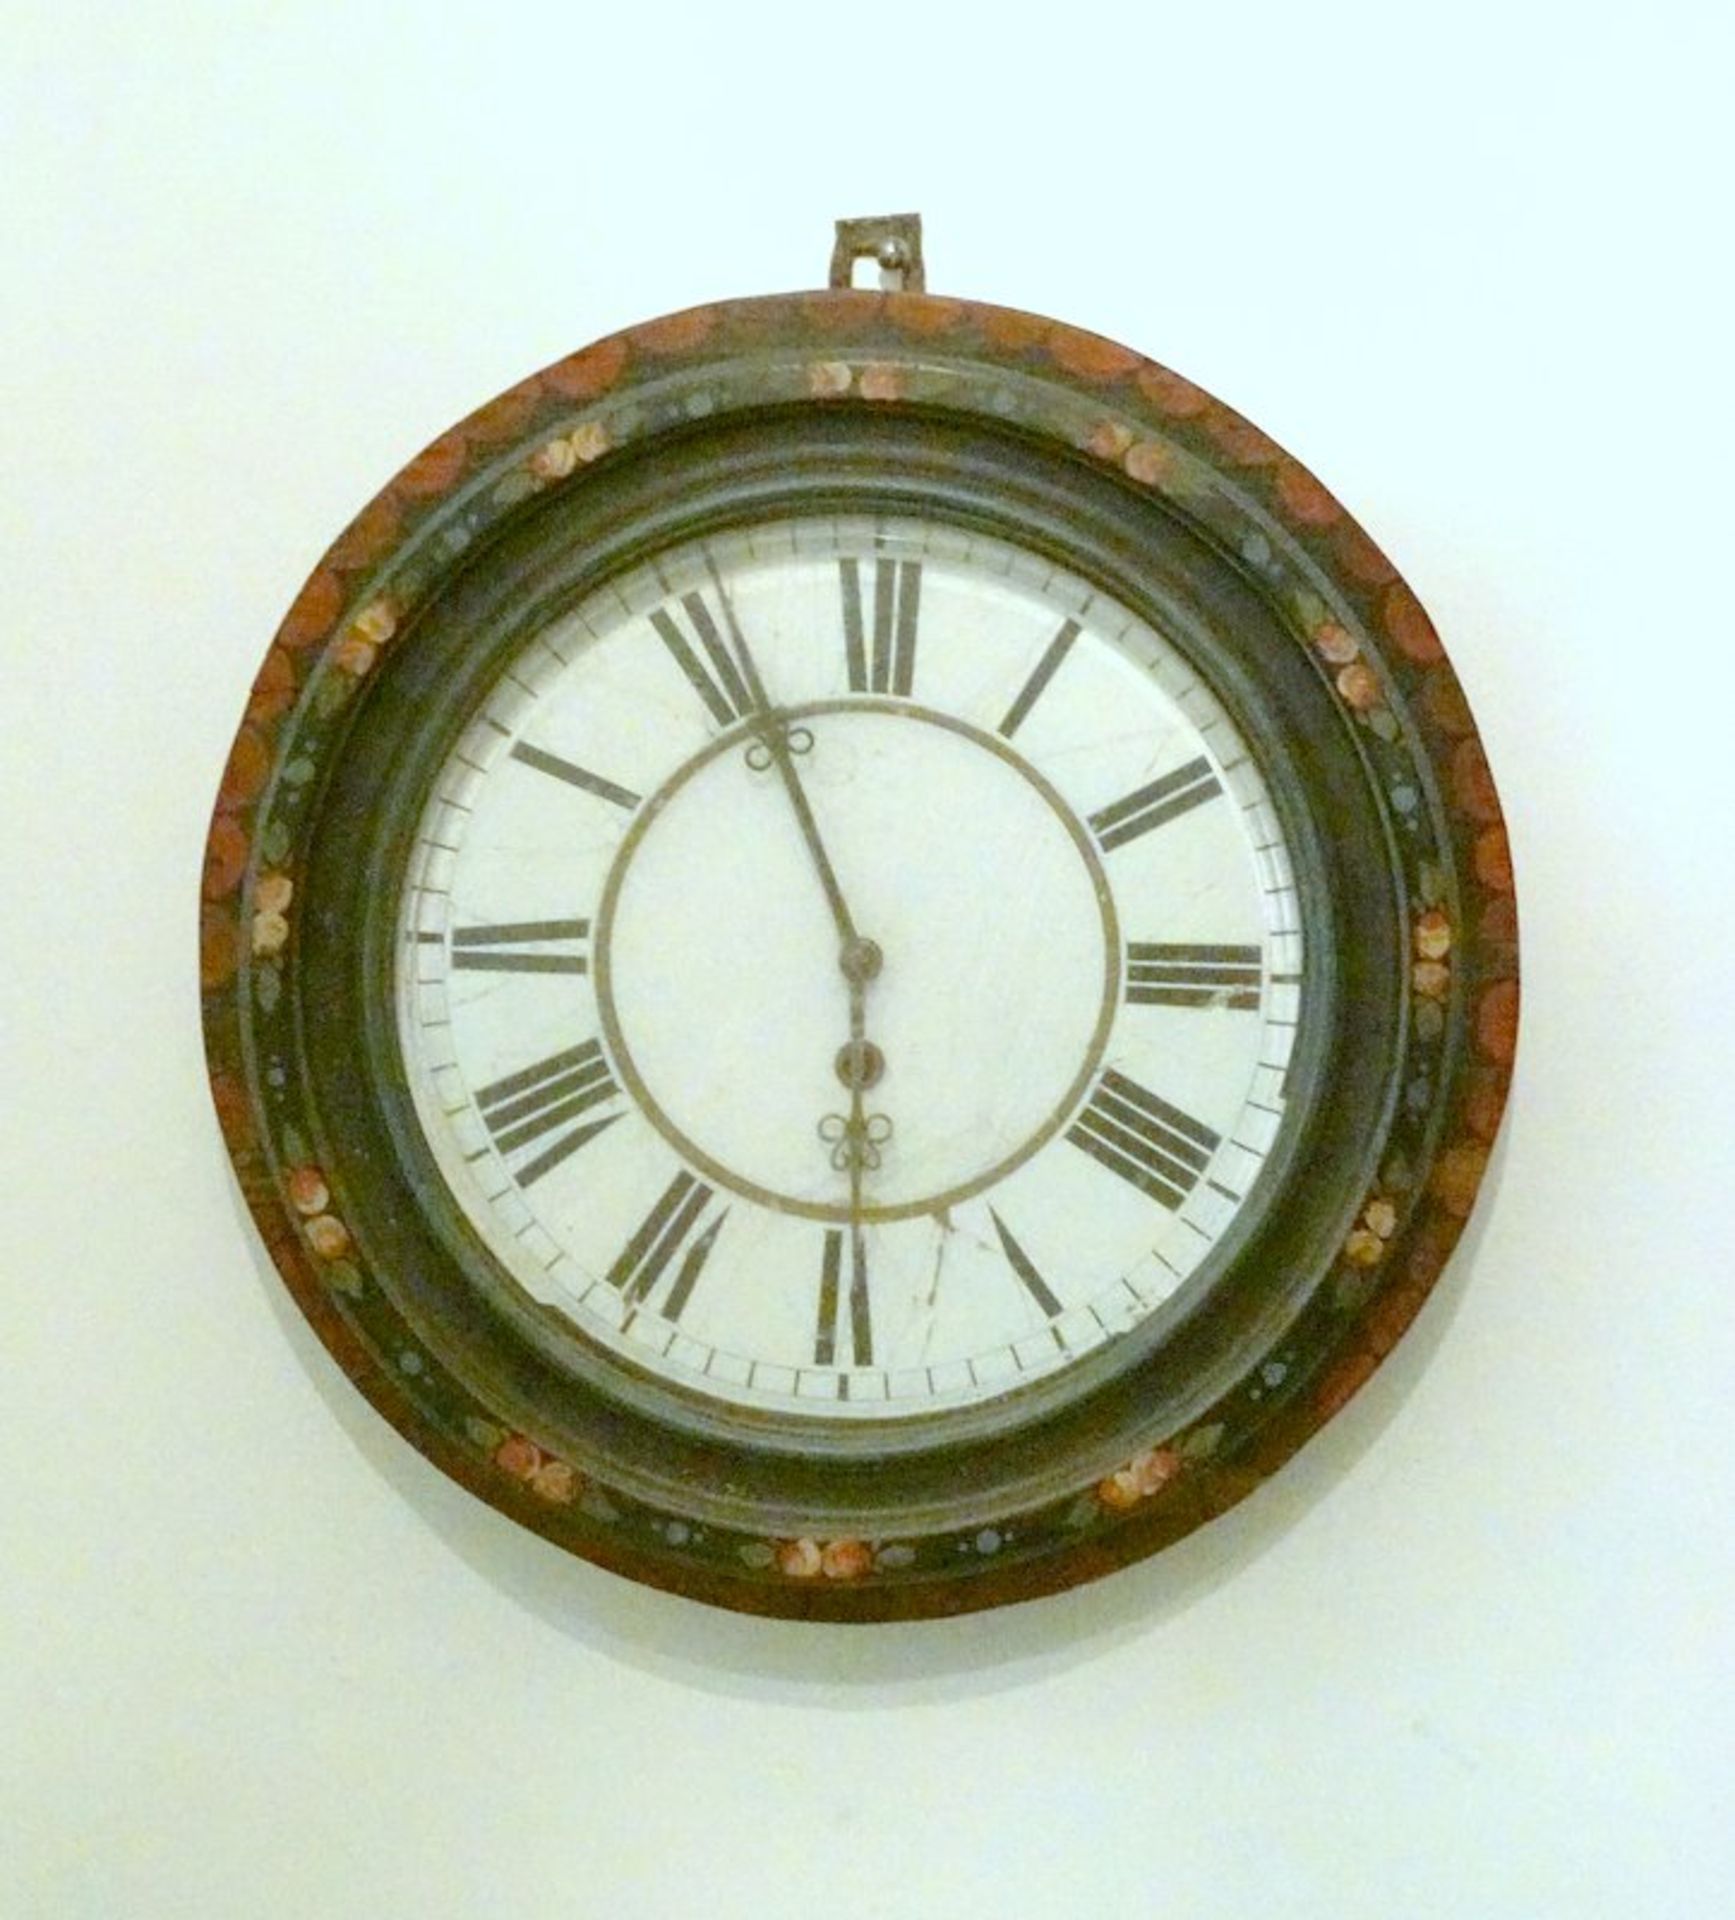 Jugendstil Uhr in rundem Holzkasten,aufklappbarer Glasdeckel, der Holdkasten floral bemalt,